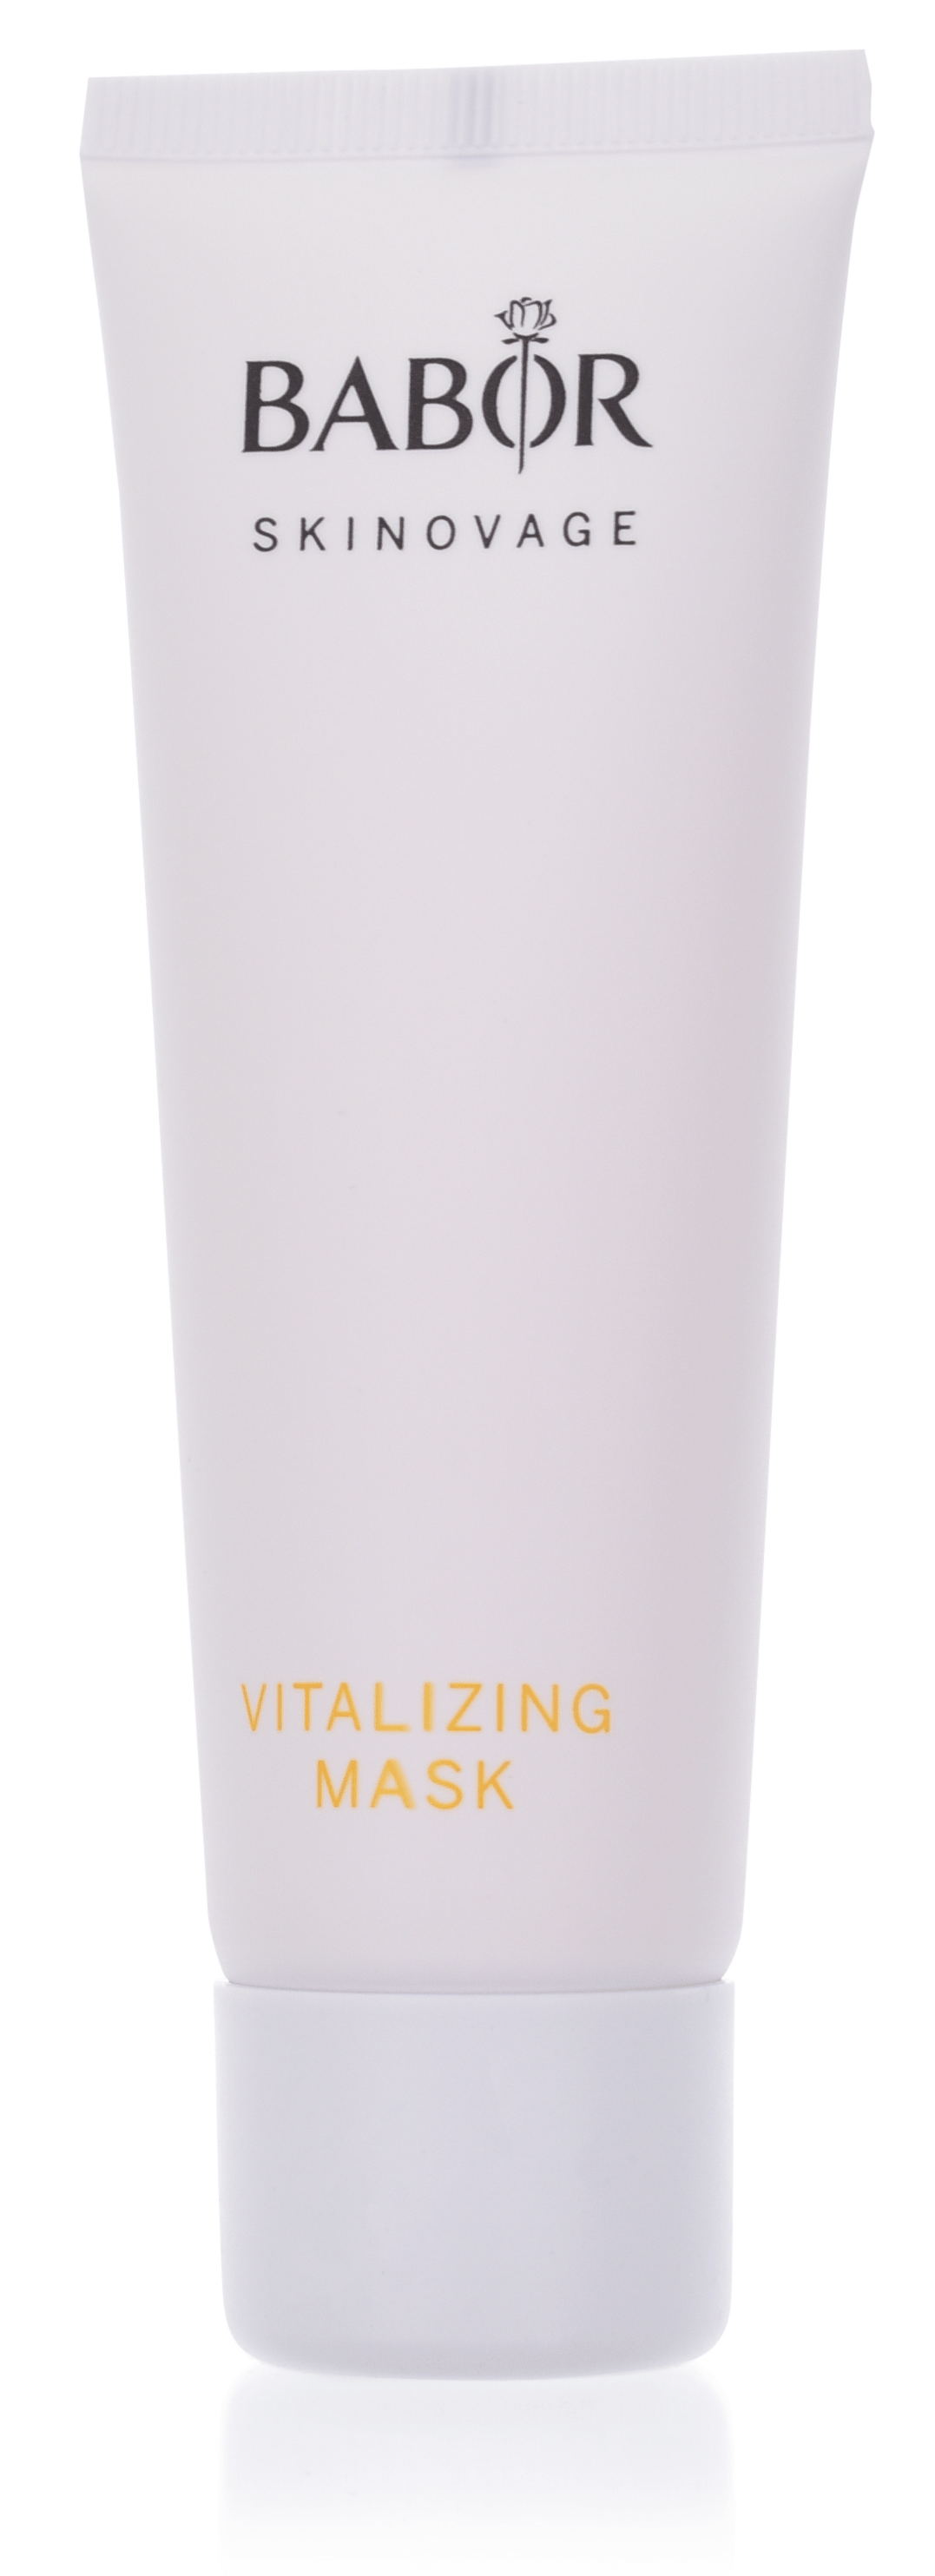 BABOR Skinovage Vitalizing - Vitalizing Mask 50ml 